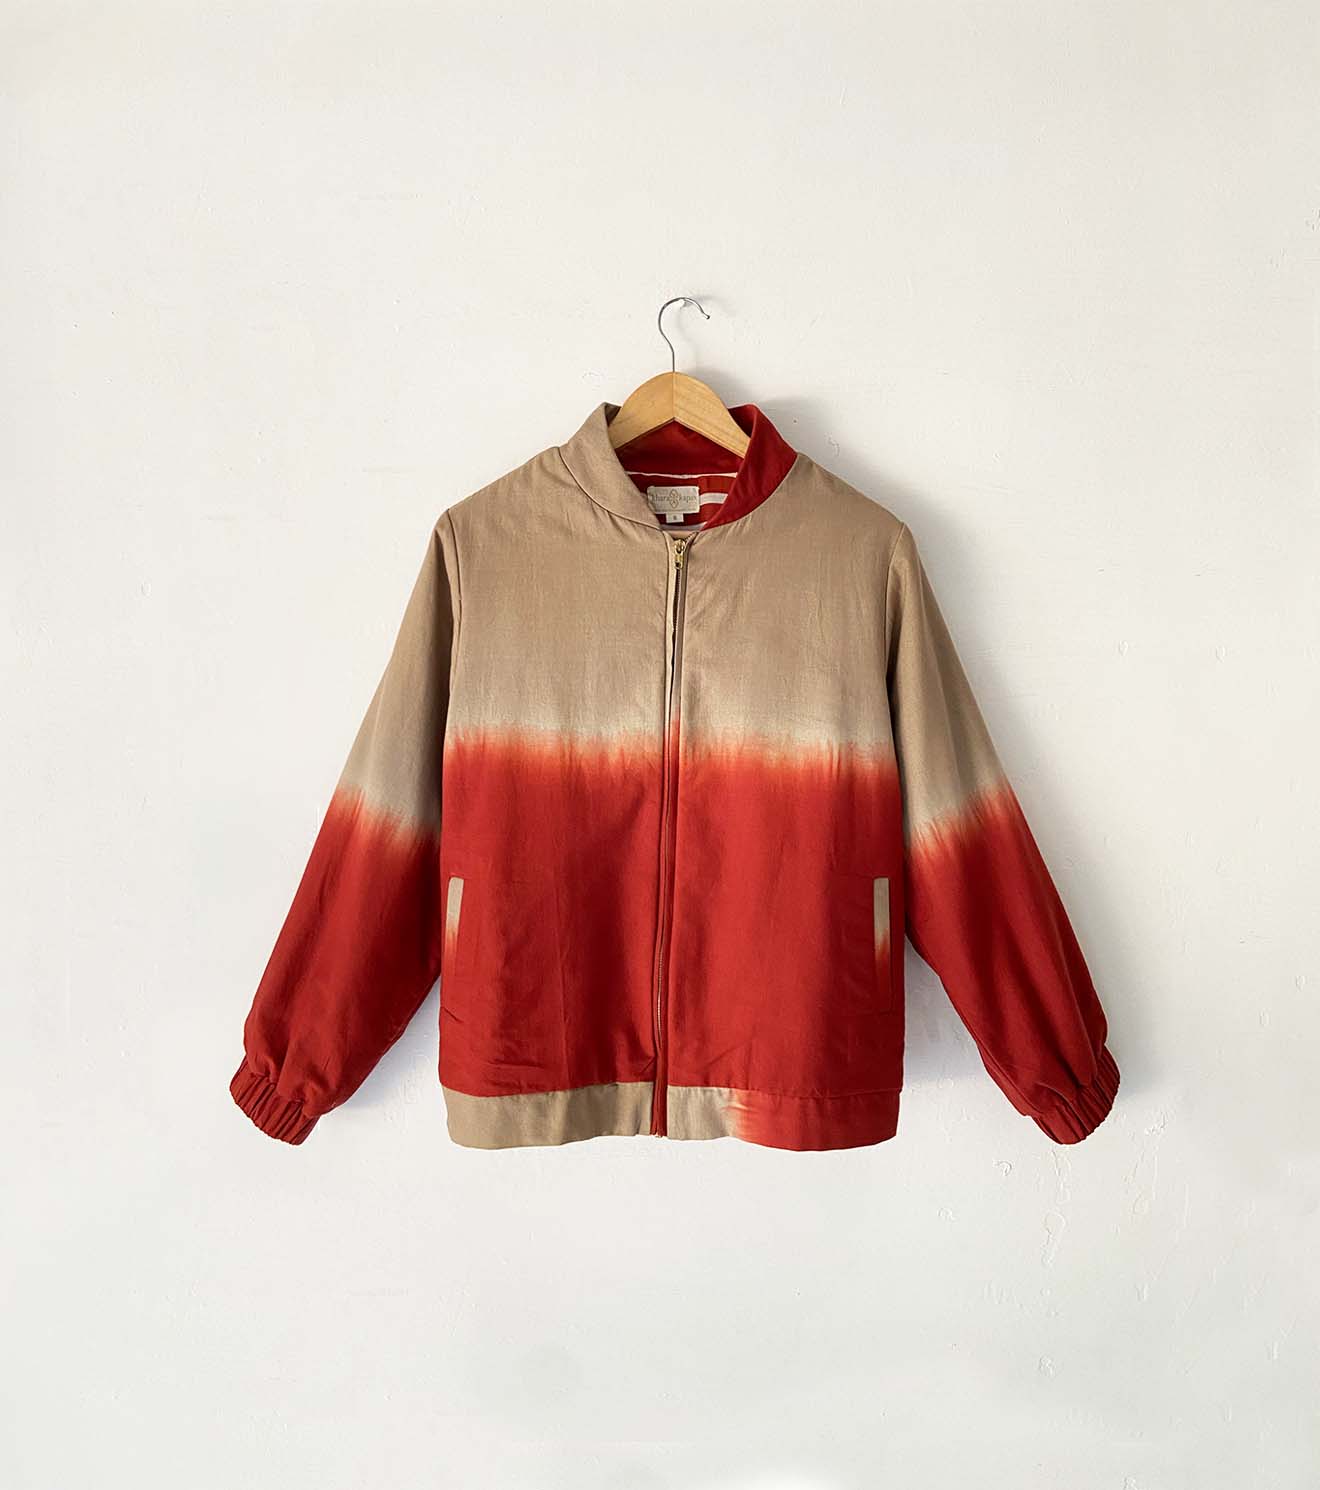 Clone shibori dyed bomber jacket